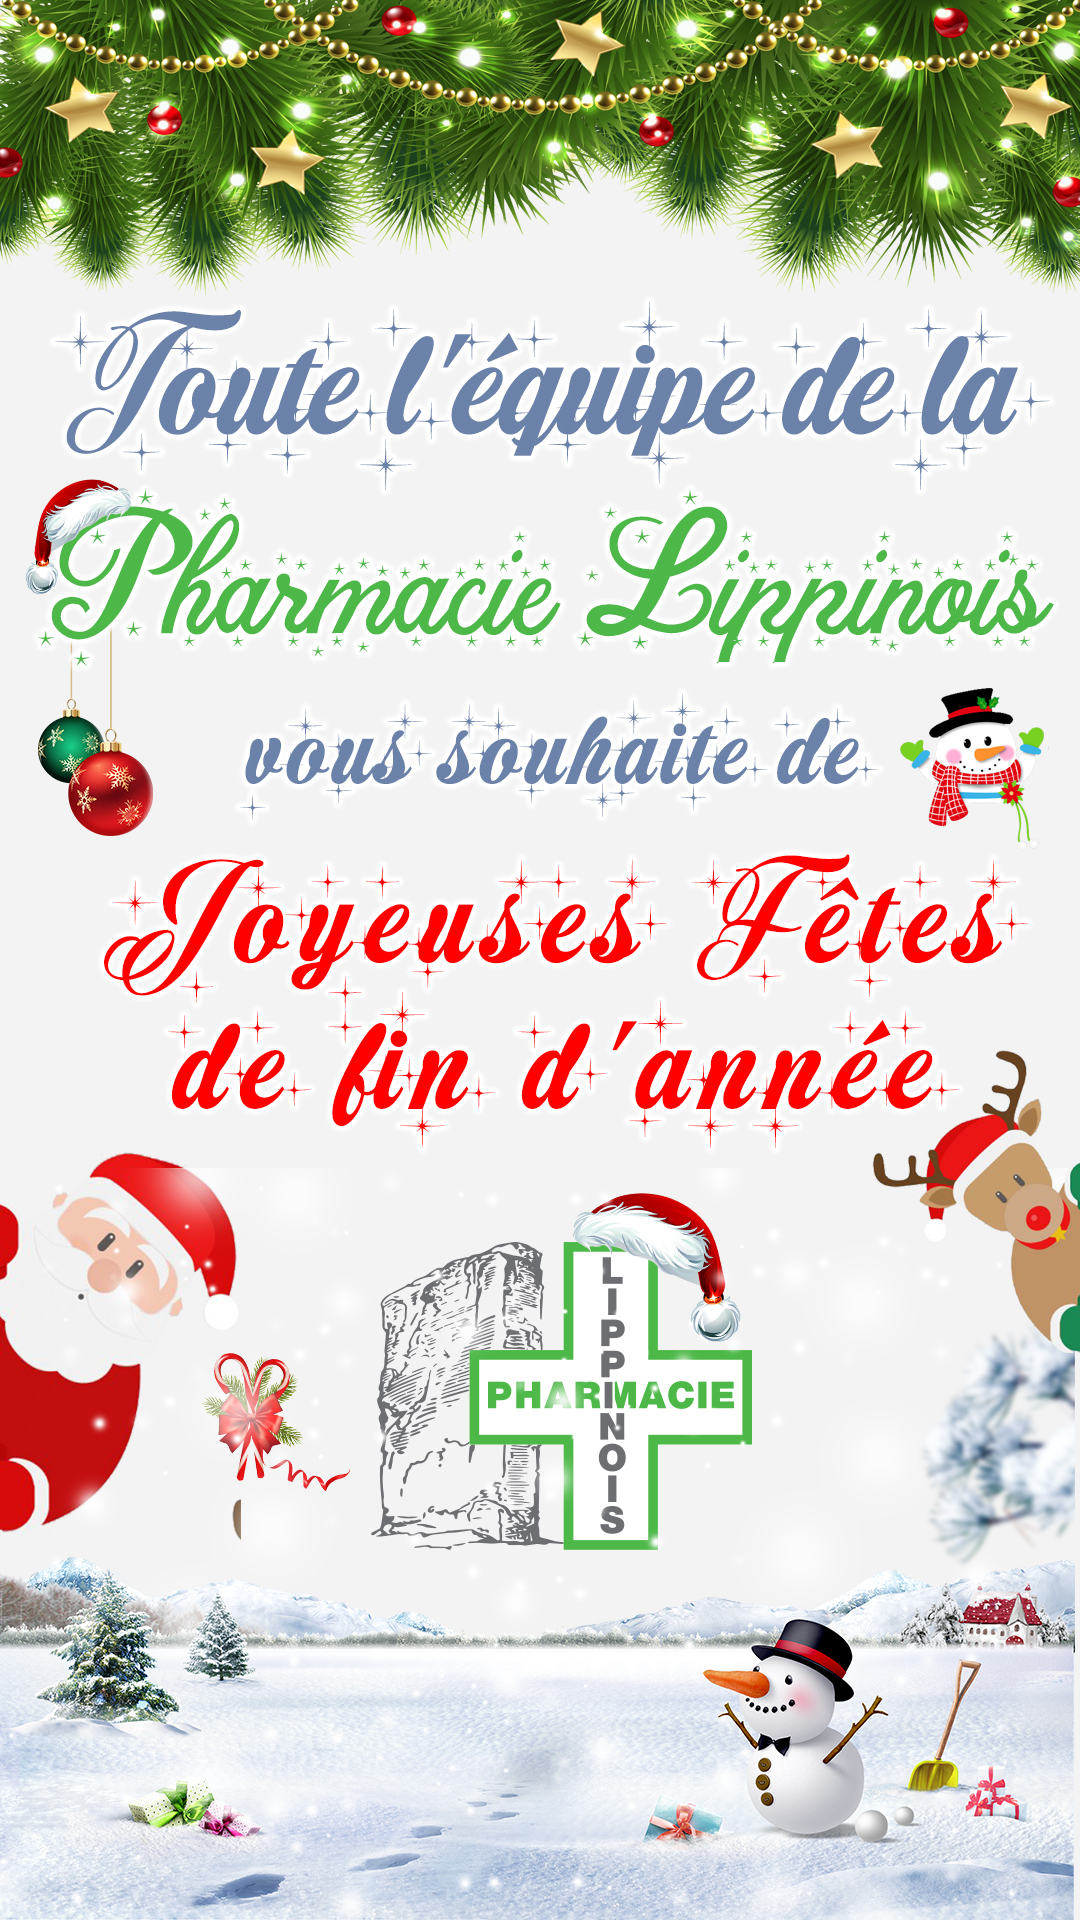 Pharmacie Lippinois - Joyeuses fetes